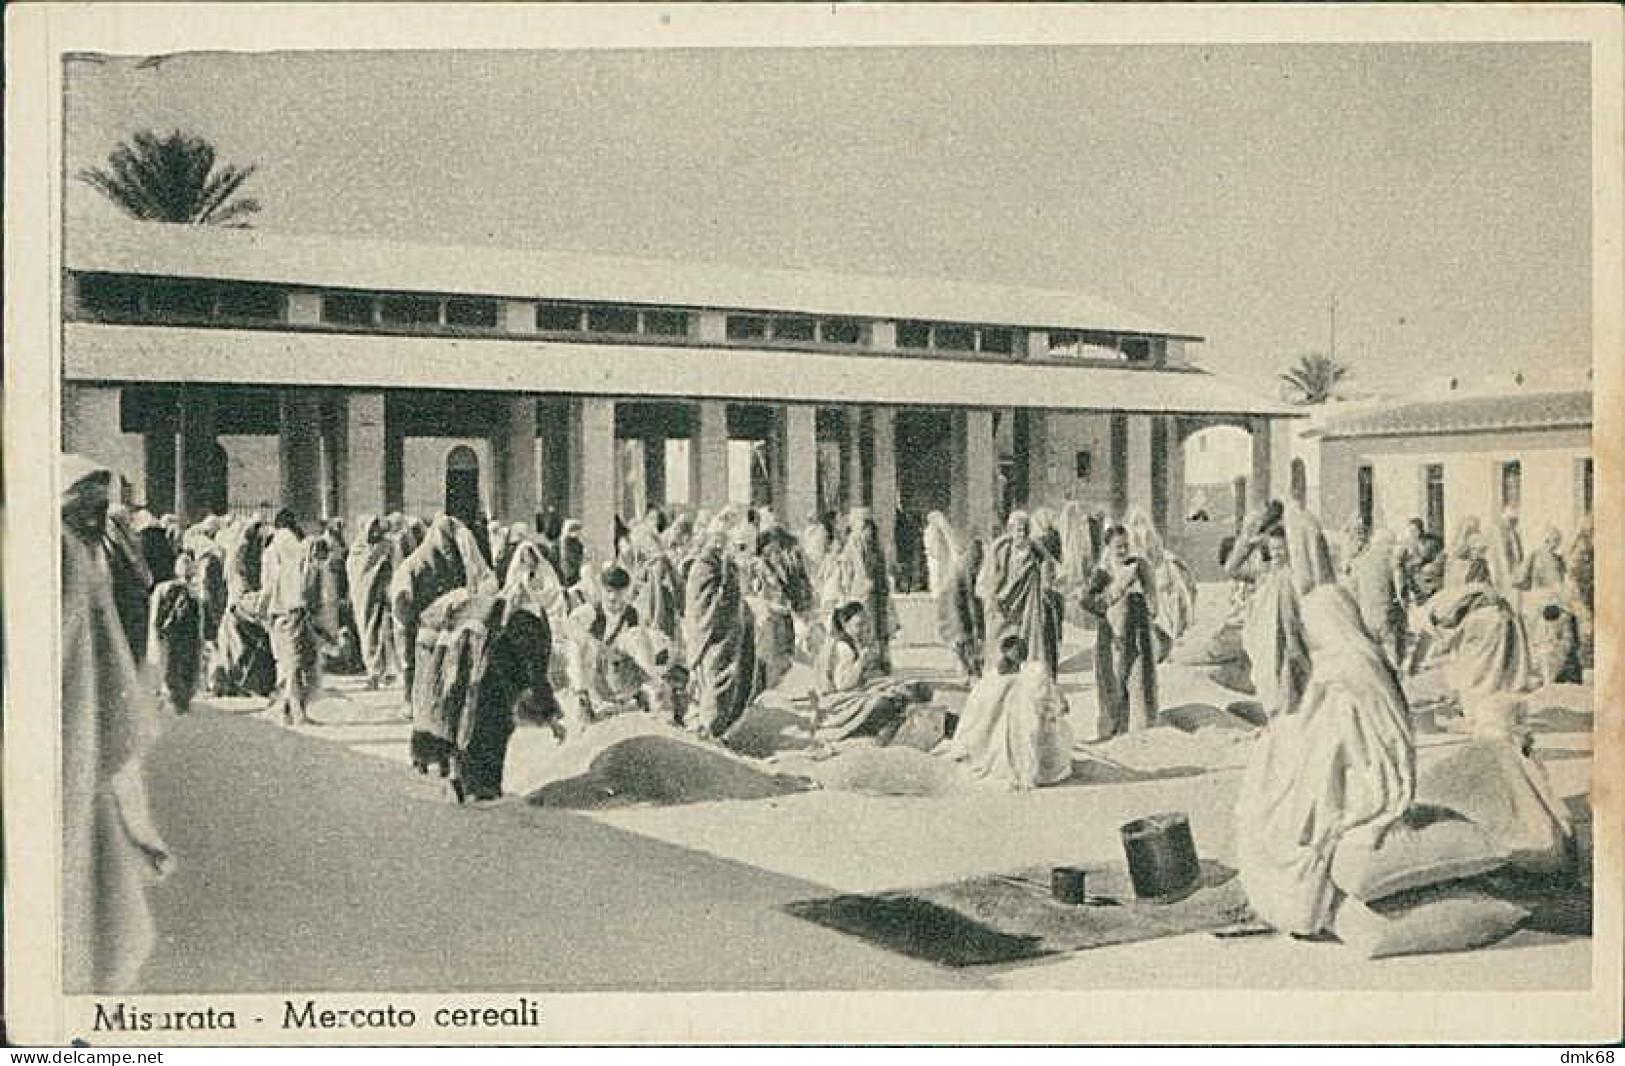 LIBIA / LIBYA - Misrata / MISURATA - MARKET / MERCATO CEREALI - ED. ABDALLA HEMA - FOTOGIORDANELLA - 1930s  (12431) - Libia